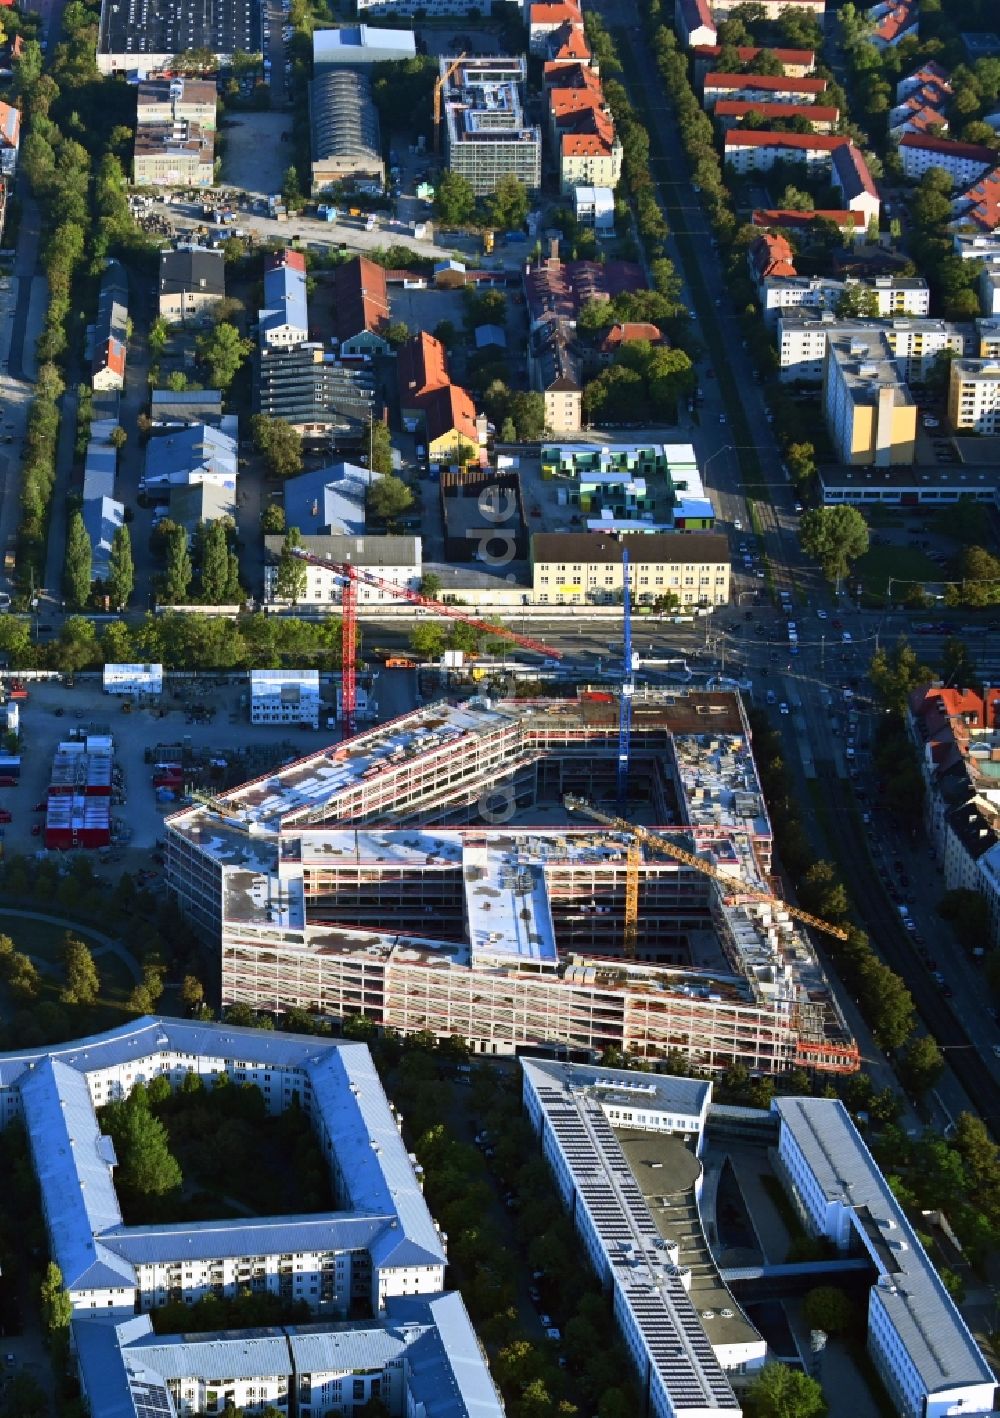 München aus der Vogelperspektive: Baustelle zum Neubau eines Strafjustizzentrum in München im Bundesland Bayern, Deutschland